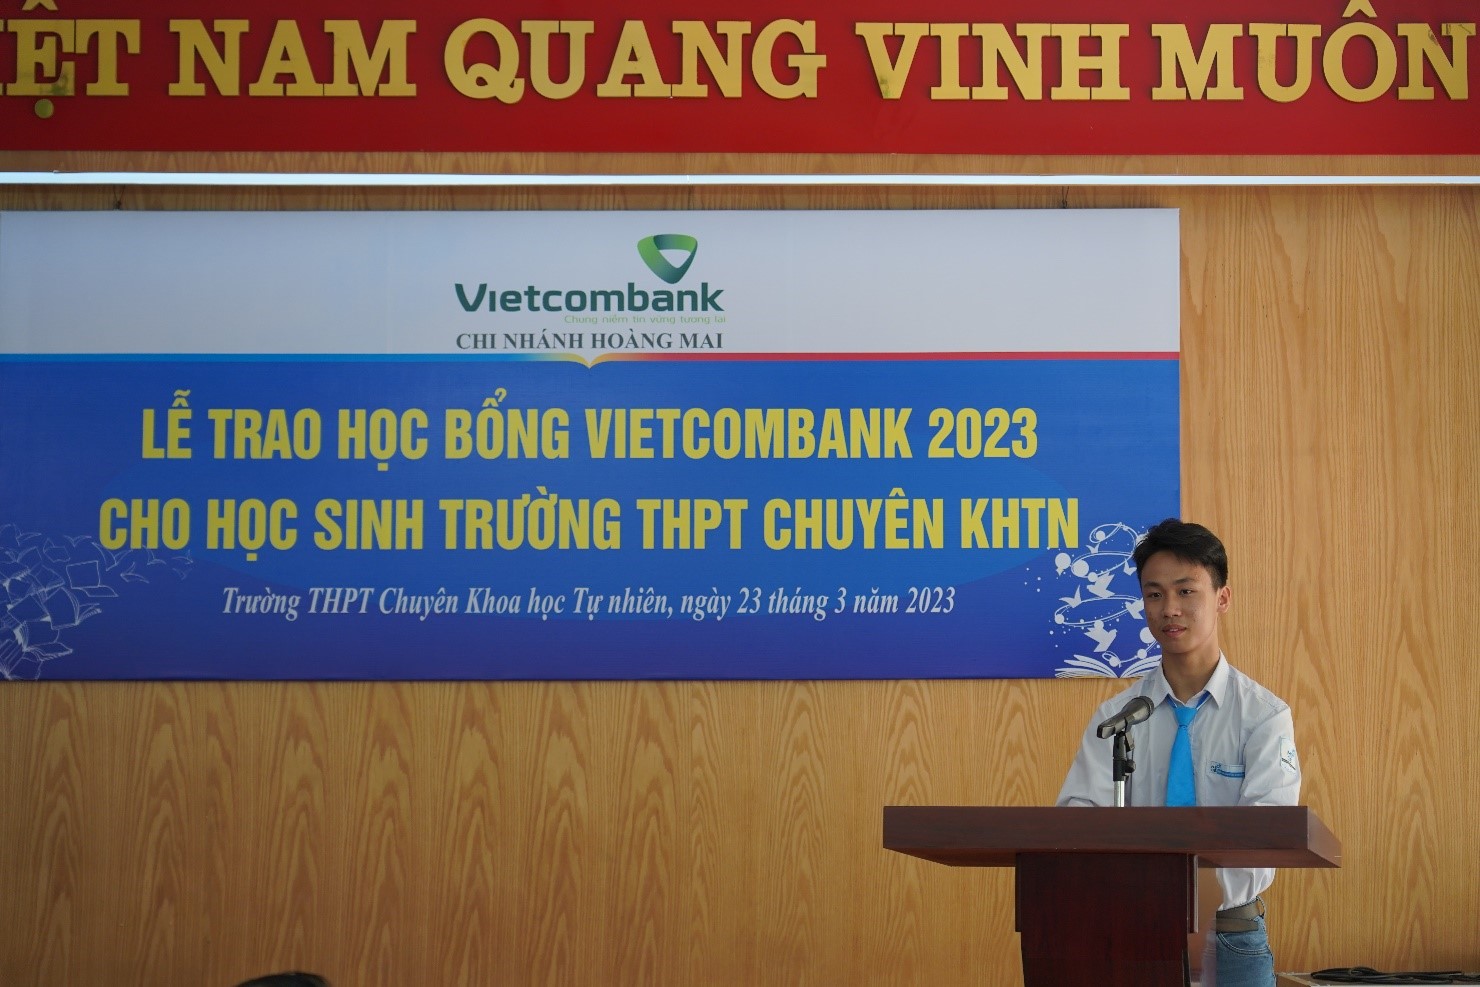 46 học sinh Trường THPT Chuyên Khoa học Tự nhiên nhận học bổng giá trị từ Vietcombank